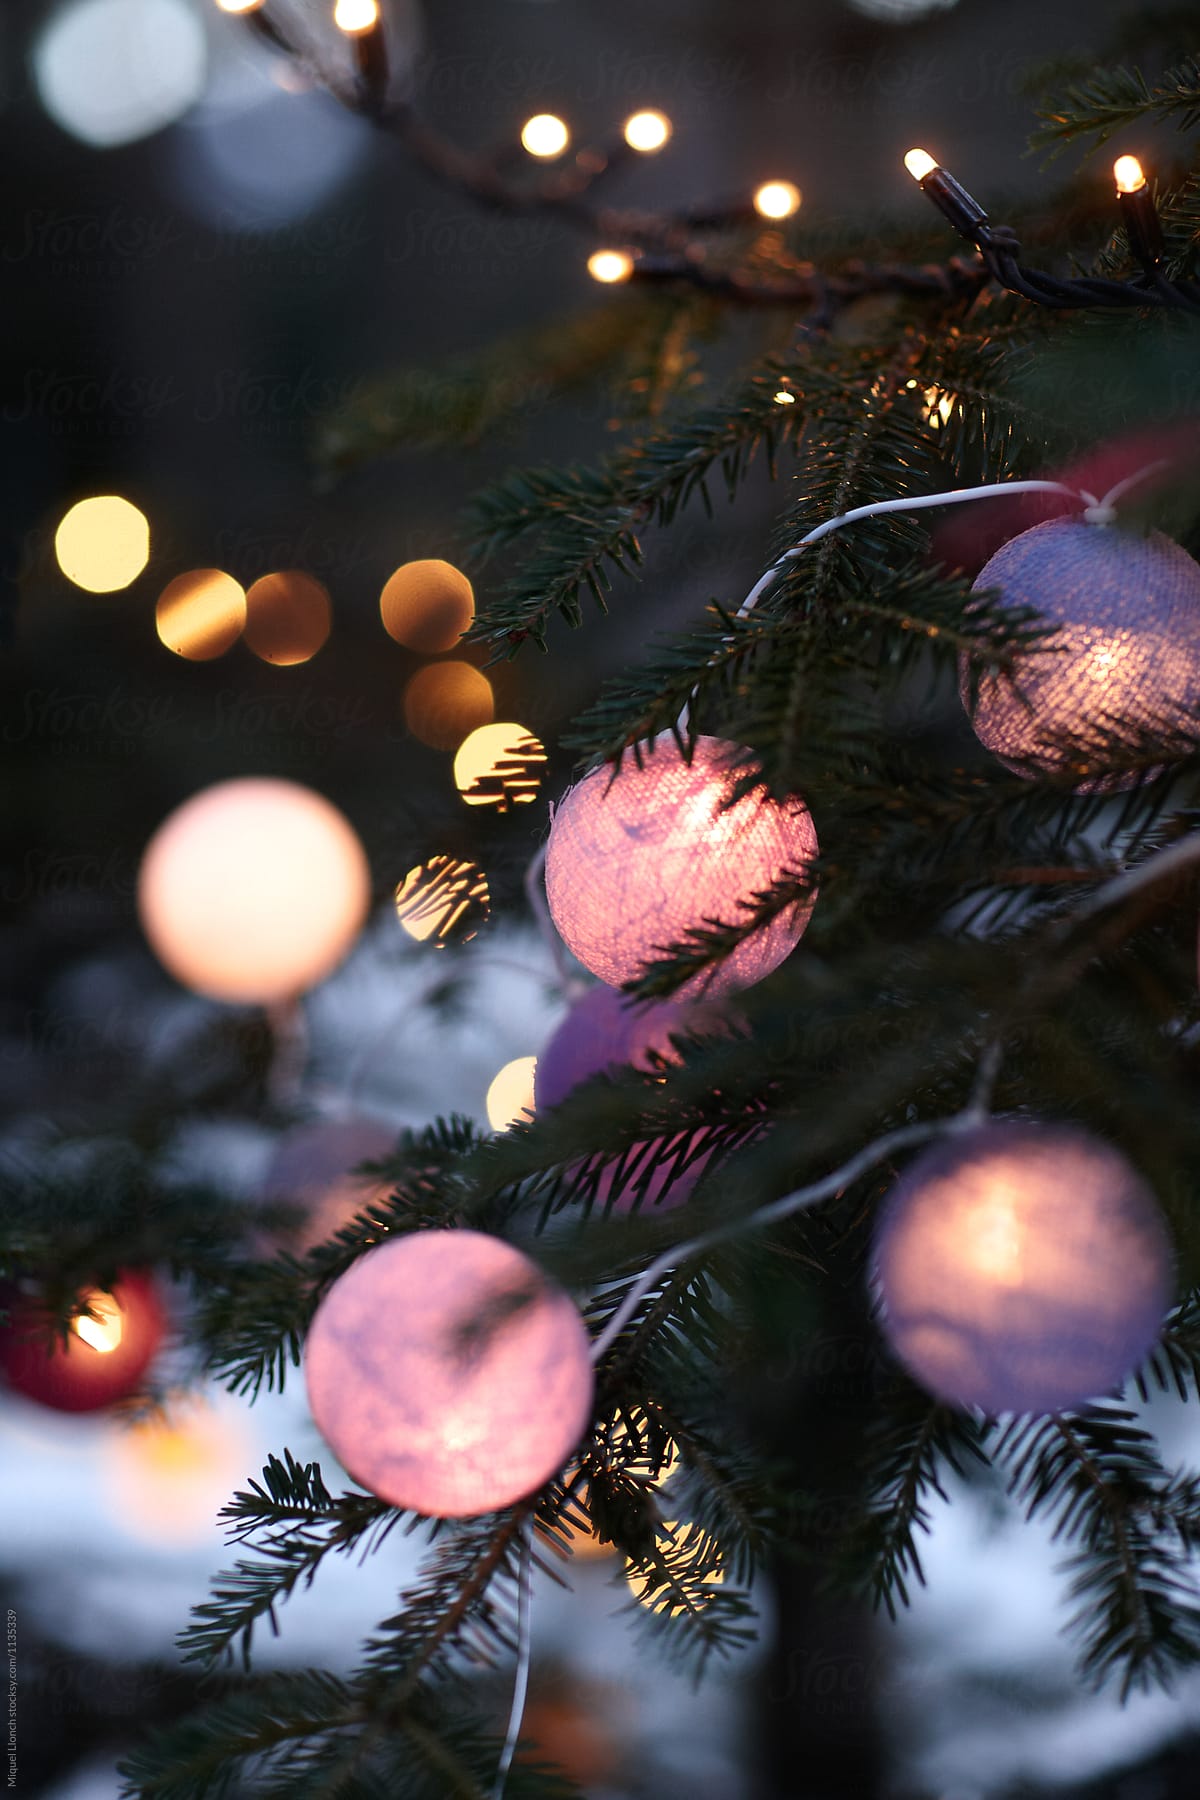 Lit colorfull  balls on Christmas tree